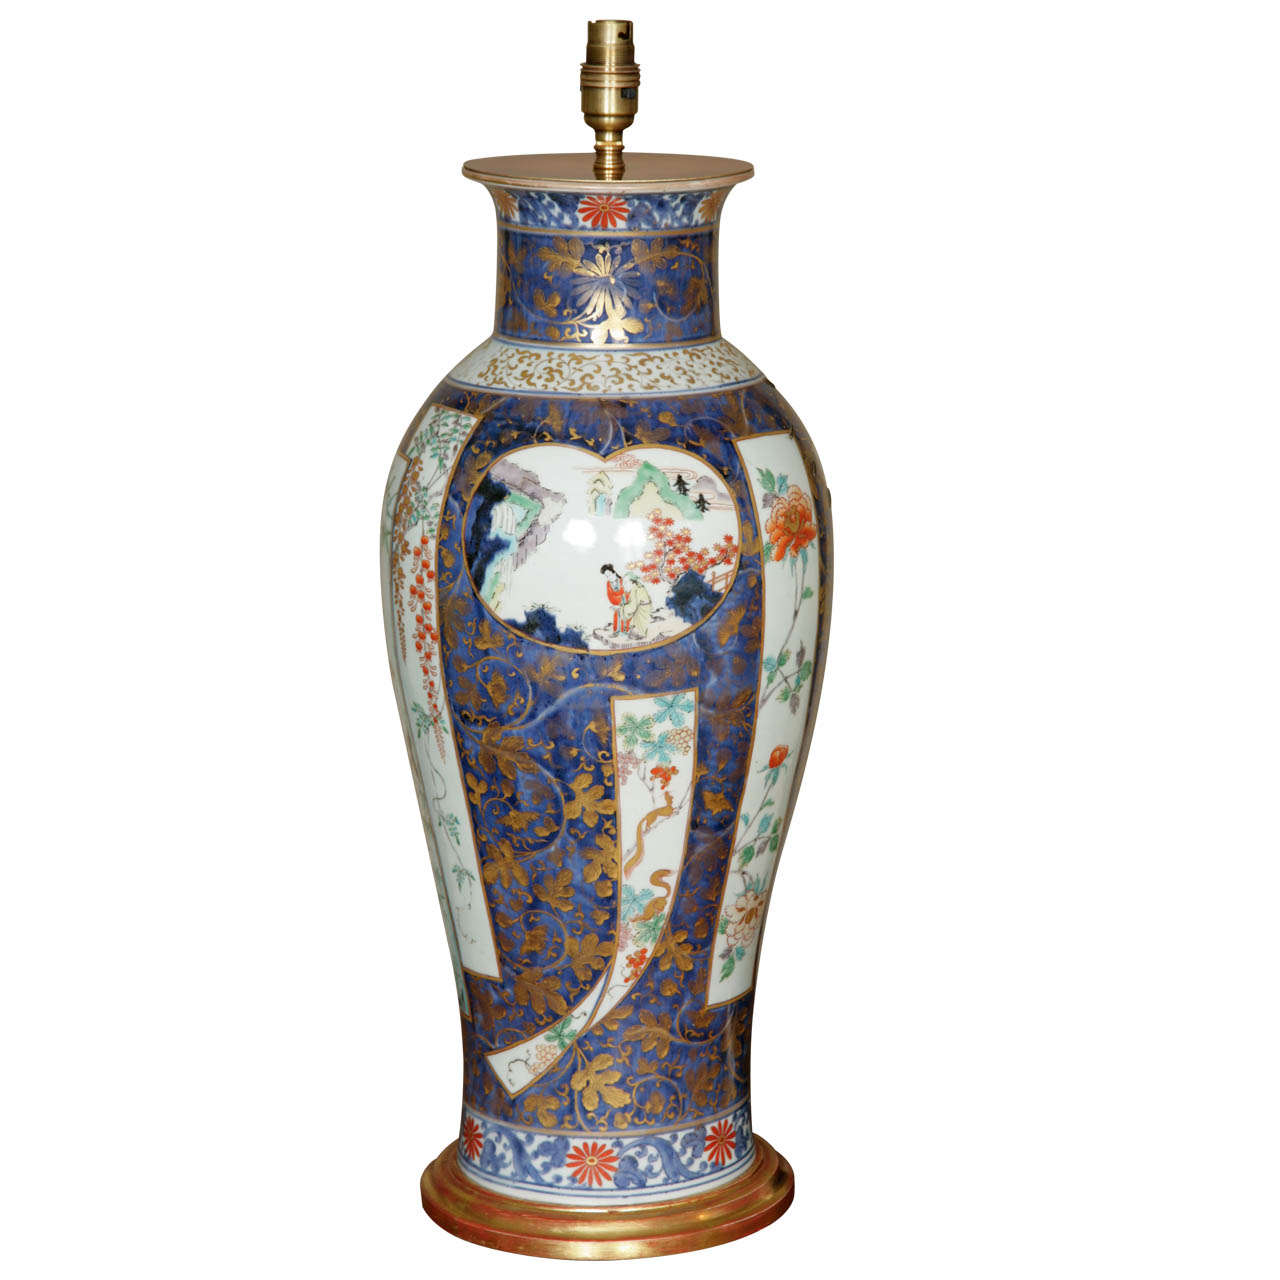 A Large Lamped Japanese Early 18th Century Imari Elongated Vase